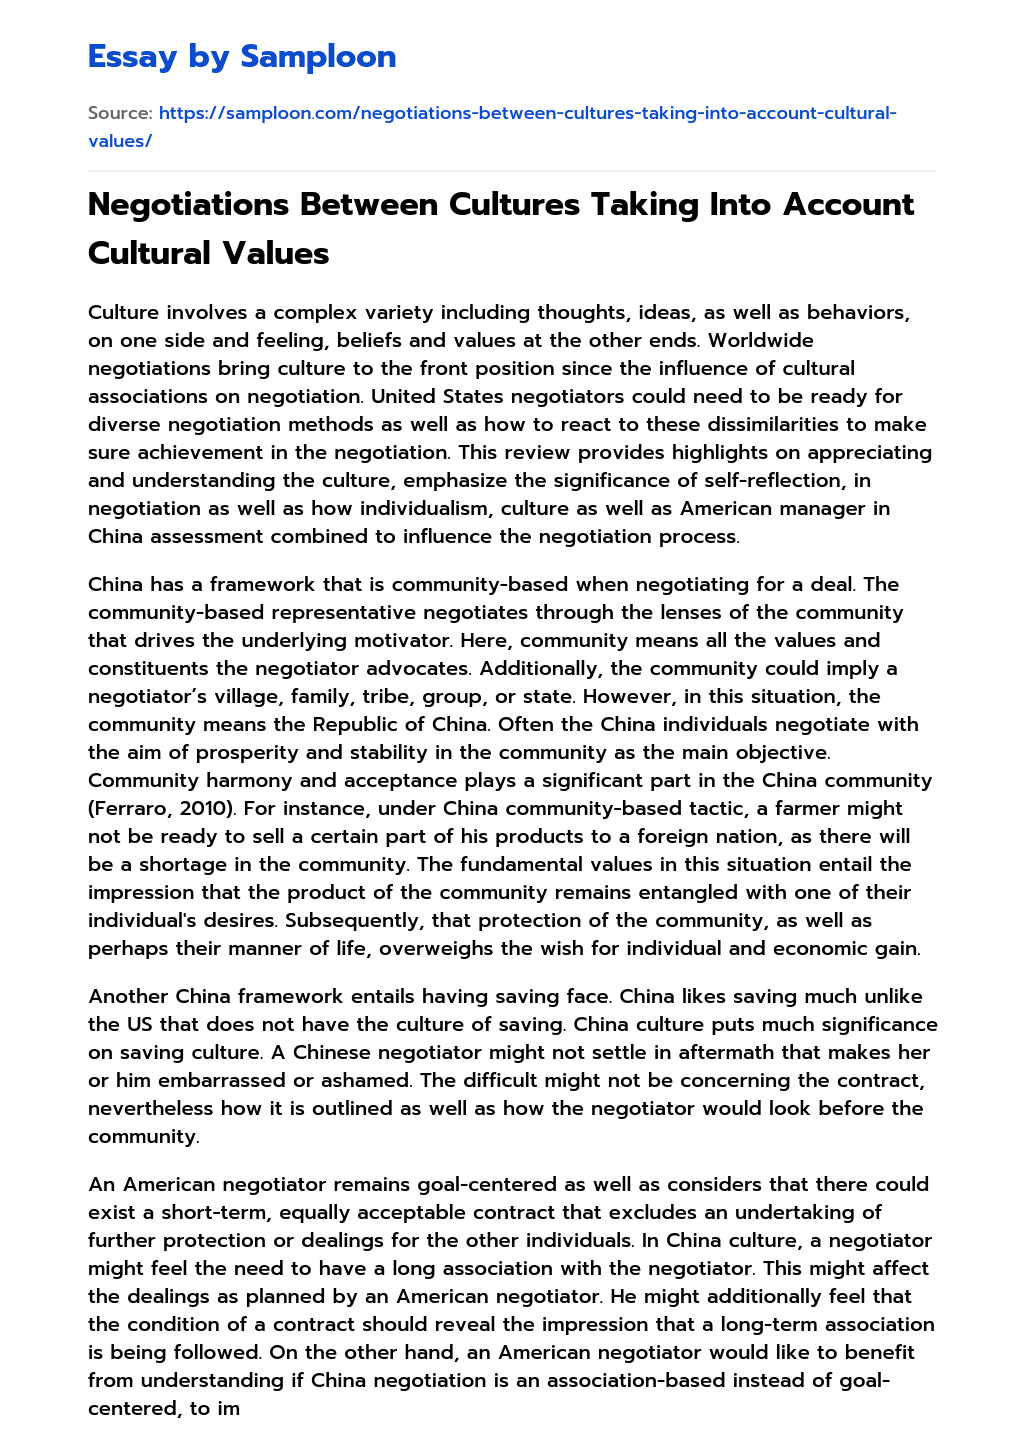 Negotiations Between Cultures Taking Into Account Cultural Values essay